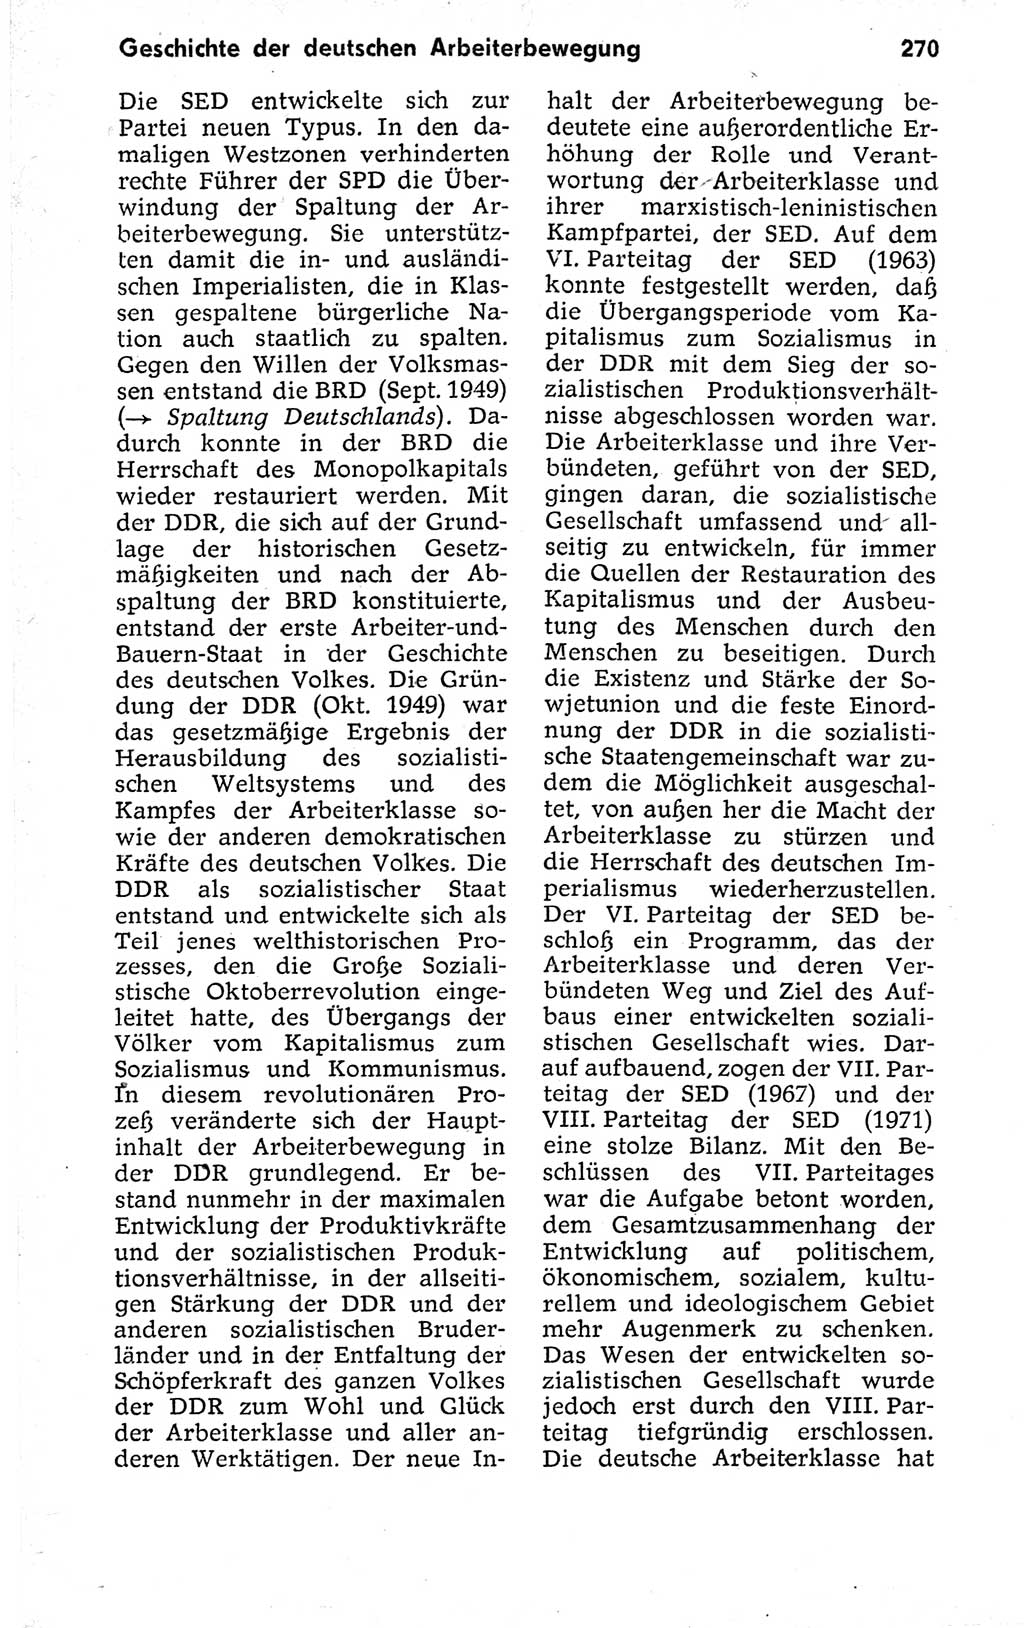 Kleines politisches Wörterbuch [Deutsche Demokratische Republik (DDR)] 1973, Seite 270 (Kl. pol. Wb. DDR 1973, S. 270)